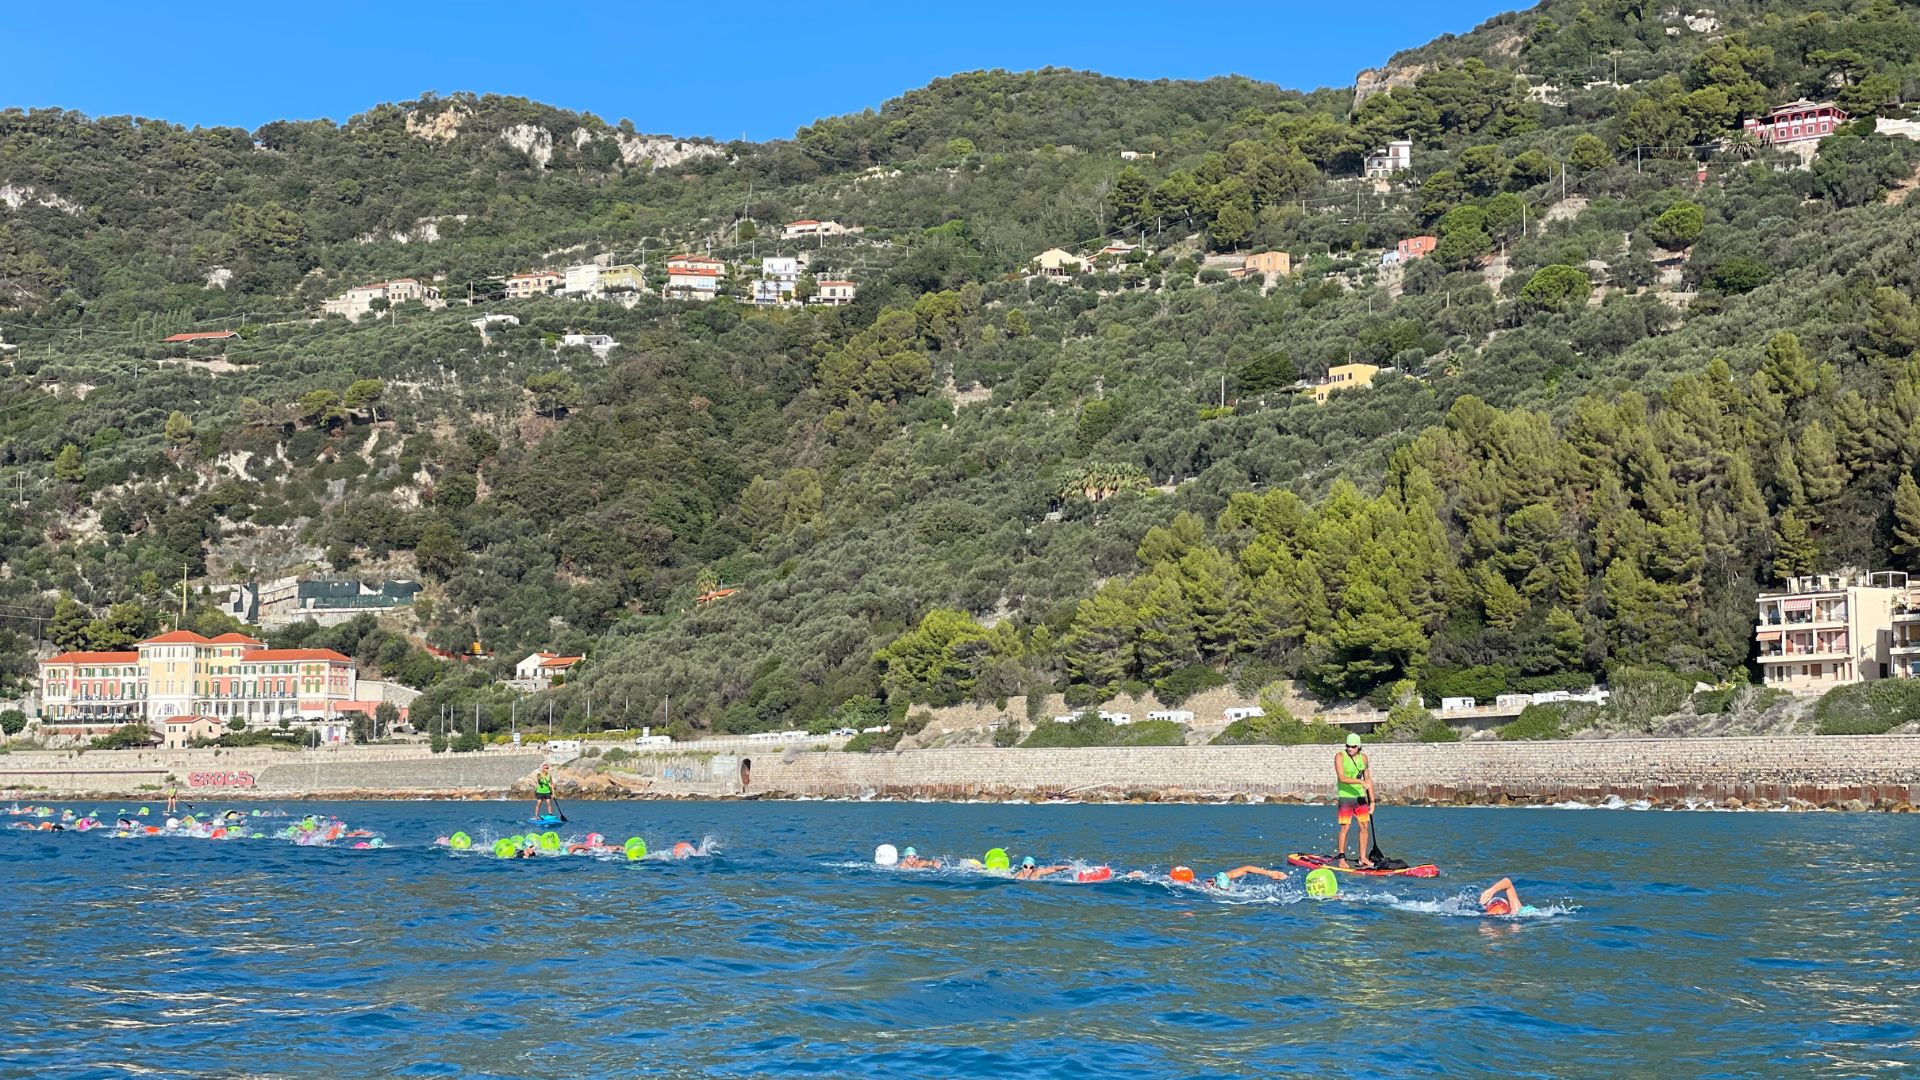 Italia Open Water Tour - Baratti Relay Swim 1/2 miglio Marino x 3